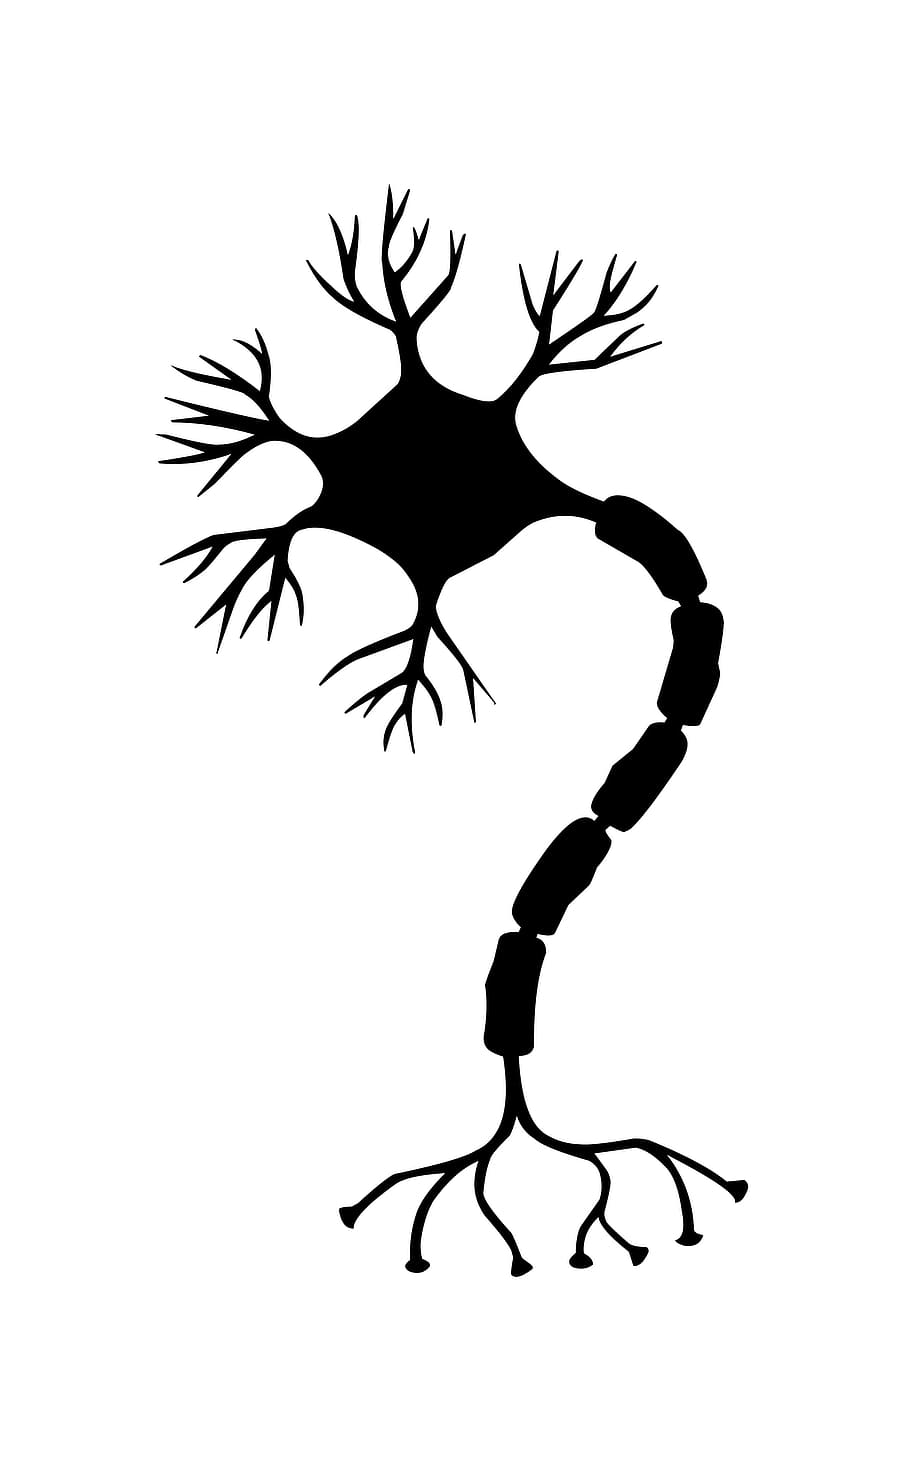 ilustración, célula nerviosa, célula, neurona, cerebro, neuronas, sistema nervioso, sinapsis, vías neuronales, ribosoma